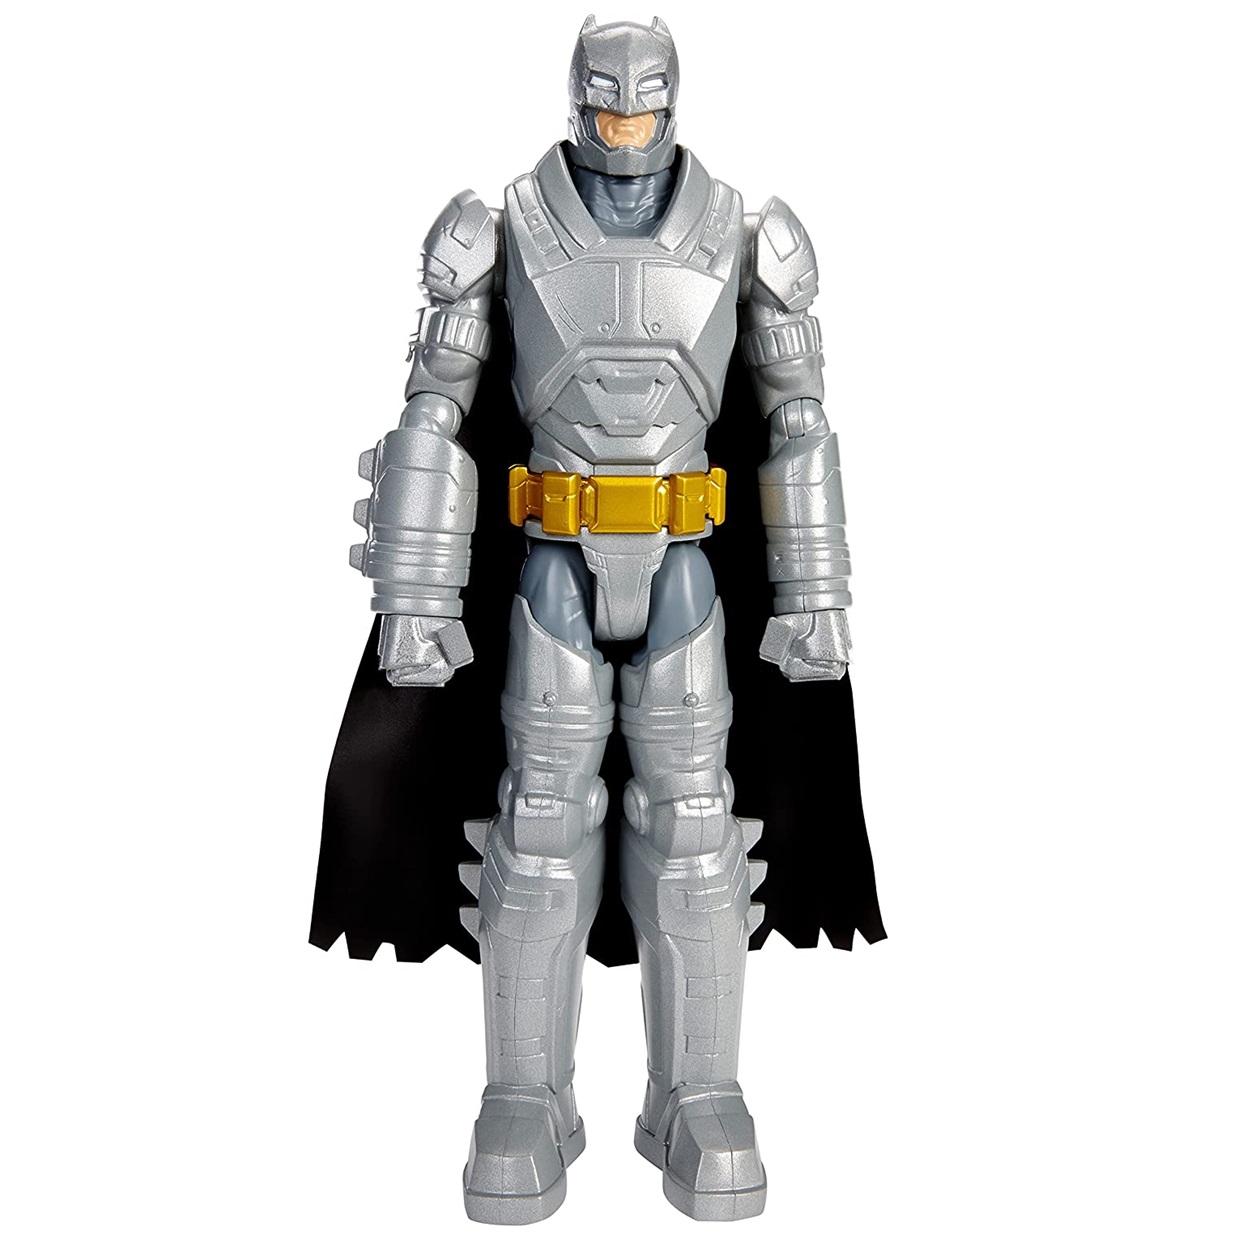 Batman Armored Figura Dc Batman Vs Superman Mattel 12 PuLG